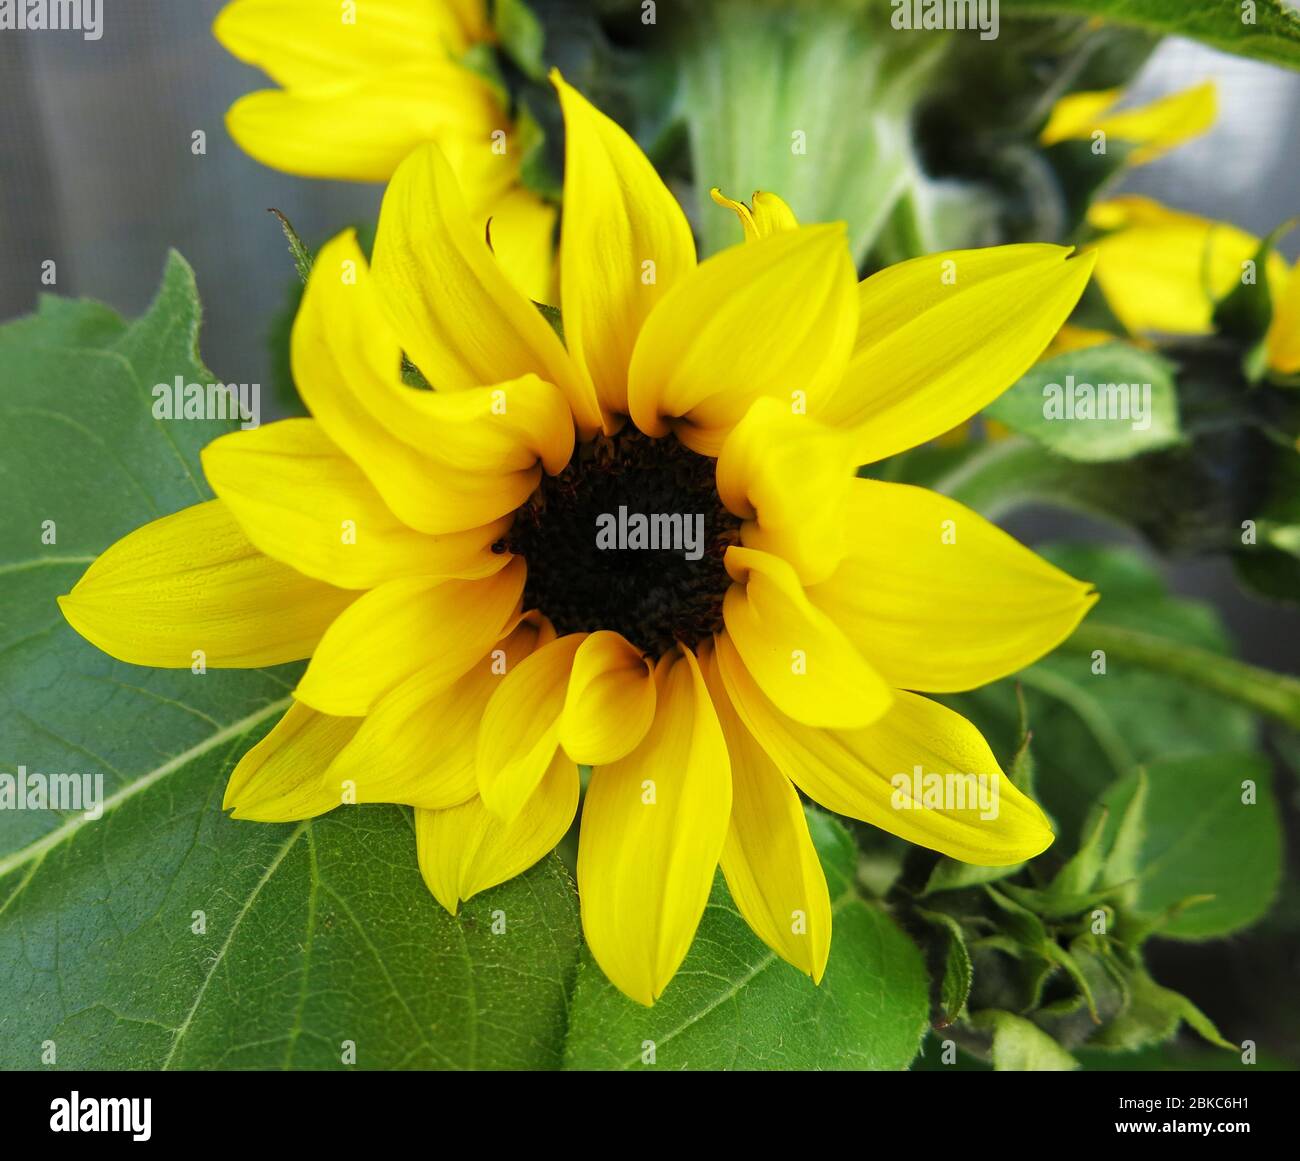 Yellow sunflower (Helianthus) blooming. Stock Photo